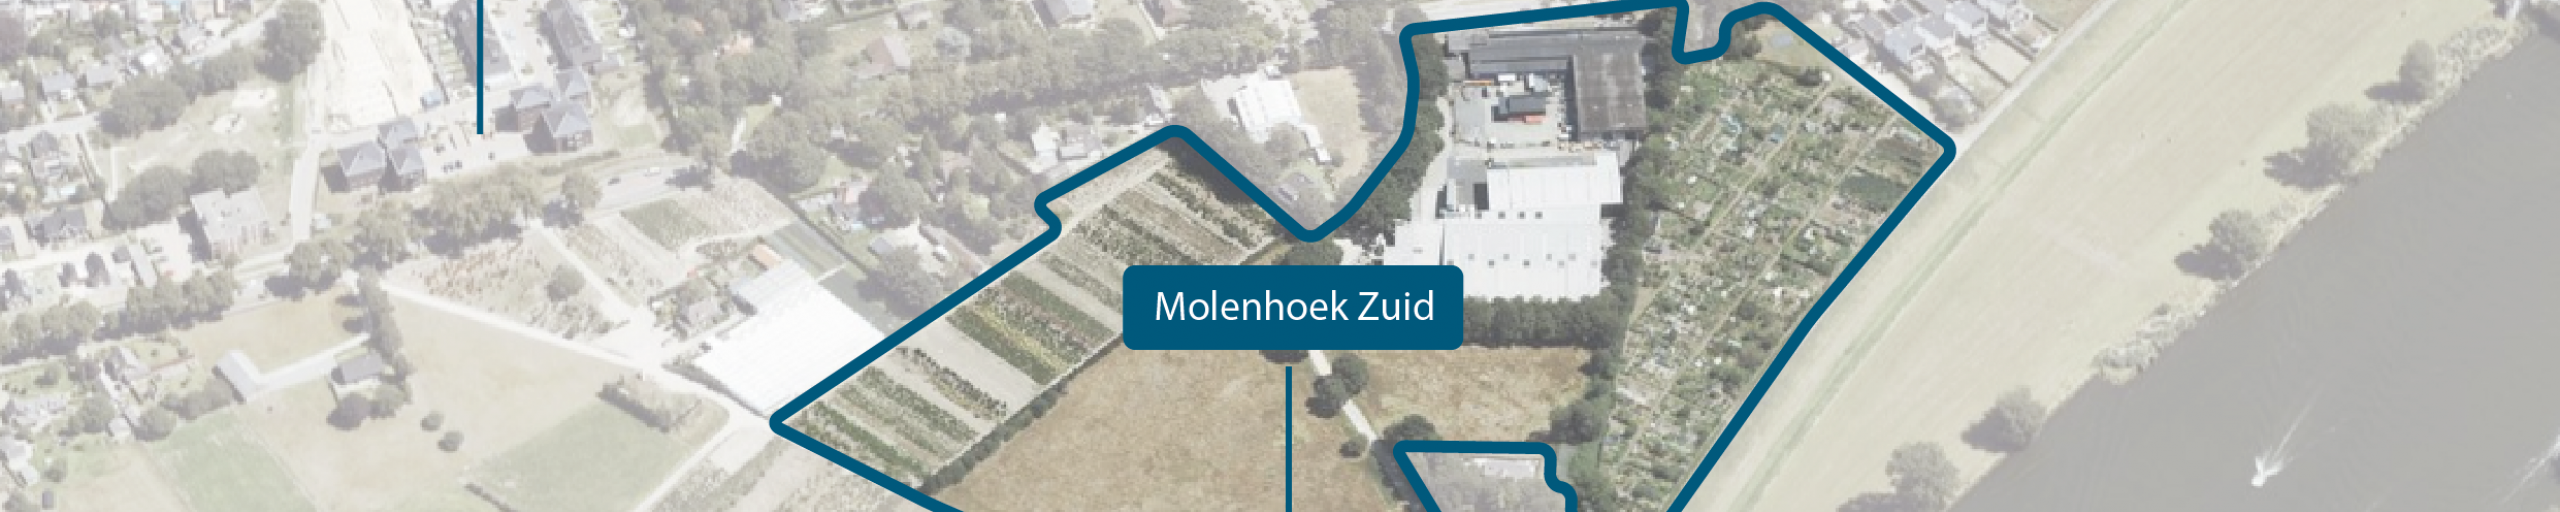 alt tekst: gebied Molenhoek Zuid, tussen de Maas, de Rijksweg, het spoor en de Bredeweg